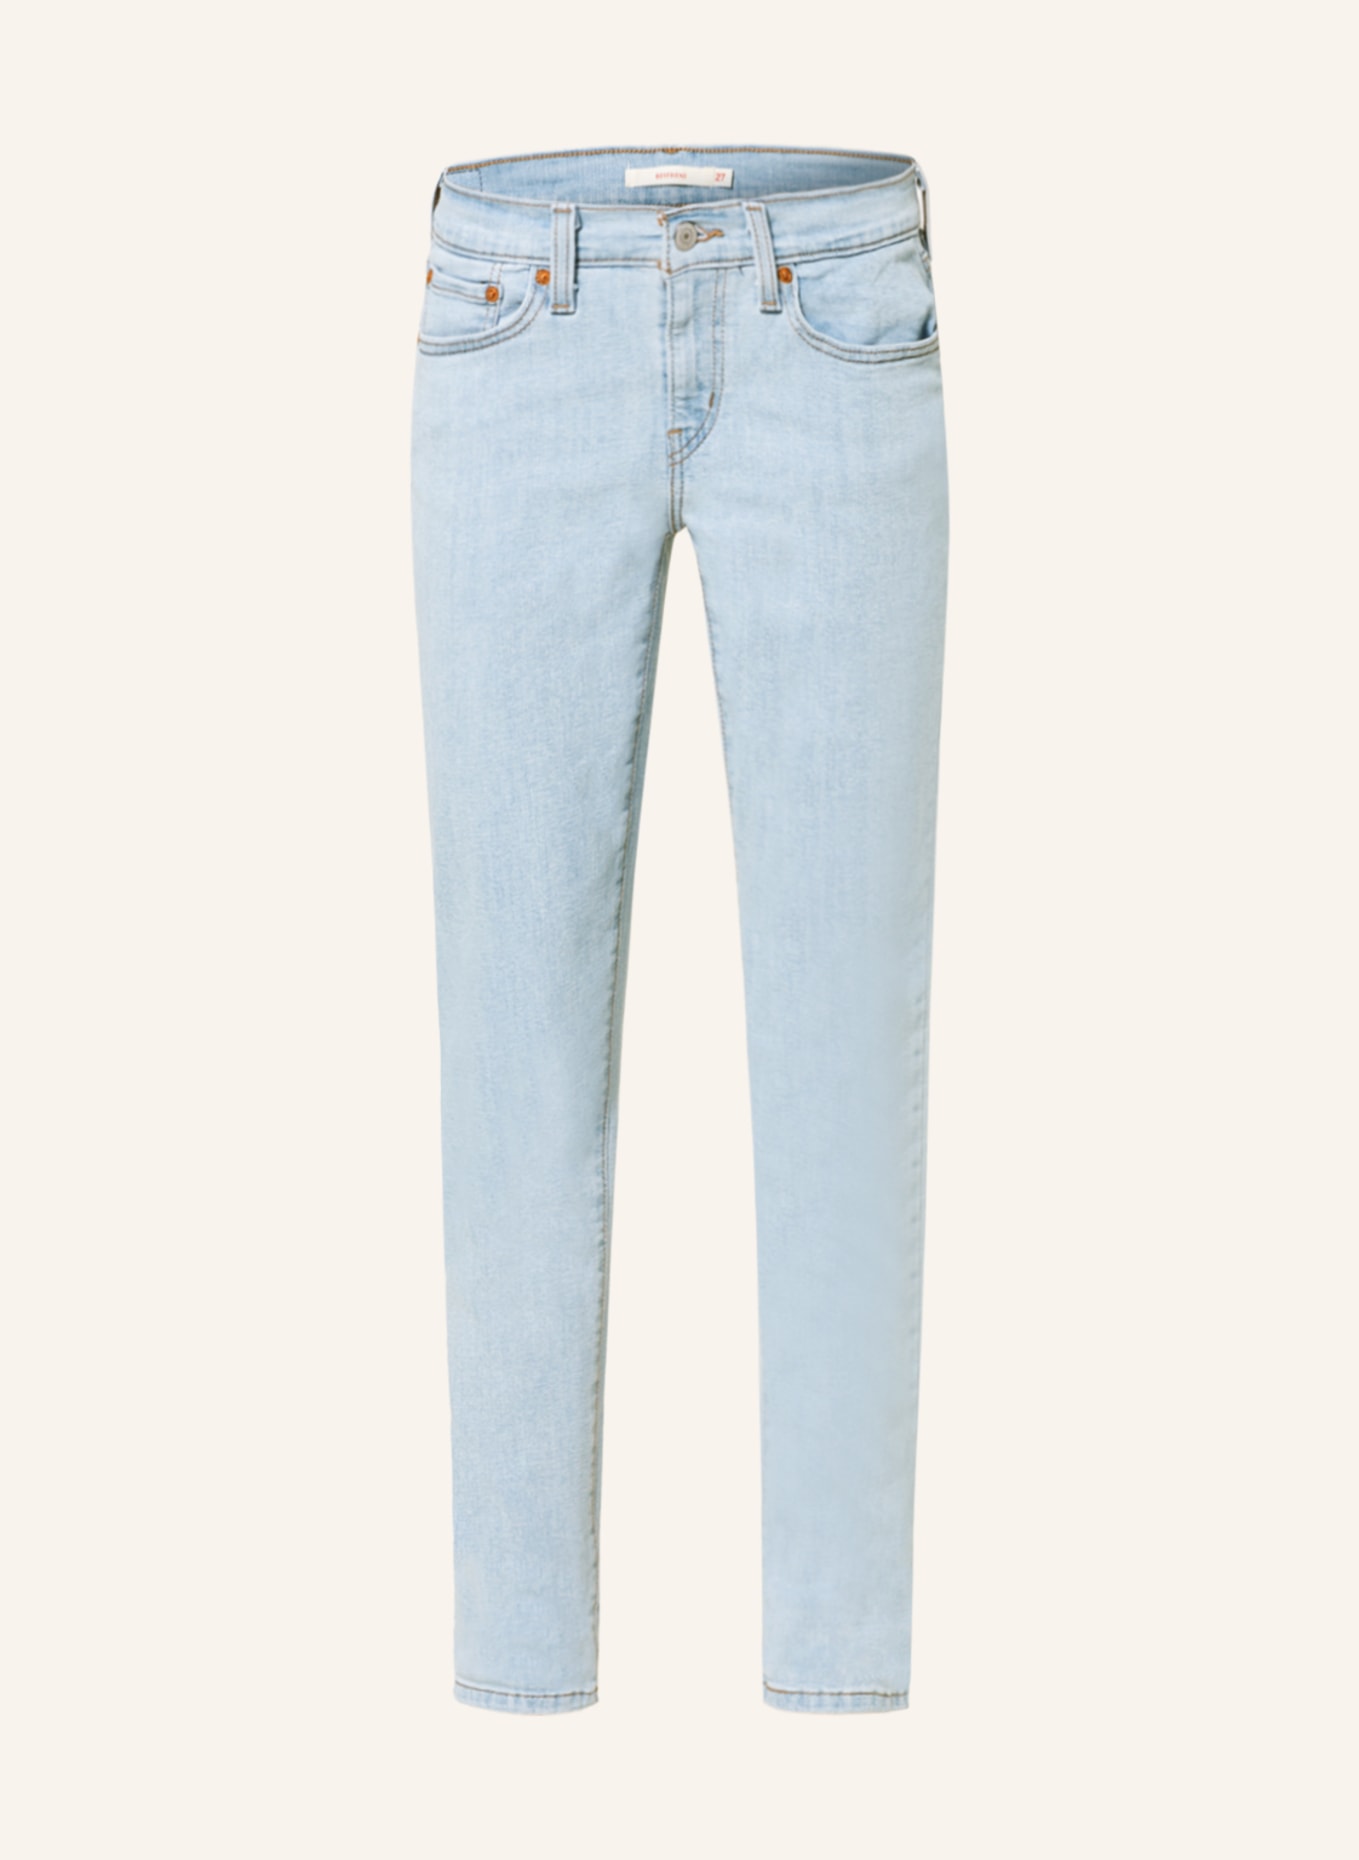 Levi's® Skinny Jeans 311, Farbe: 02 Light Indigo - Worn In (Bild 1)